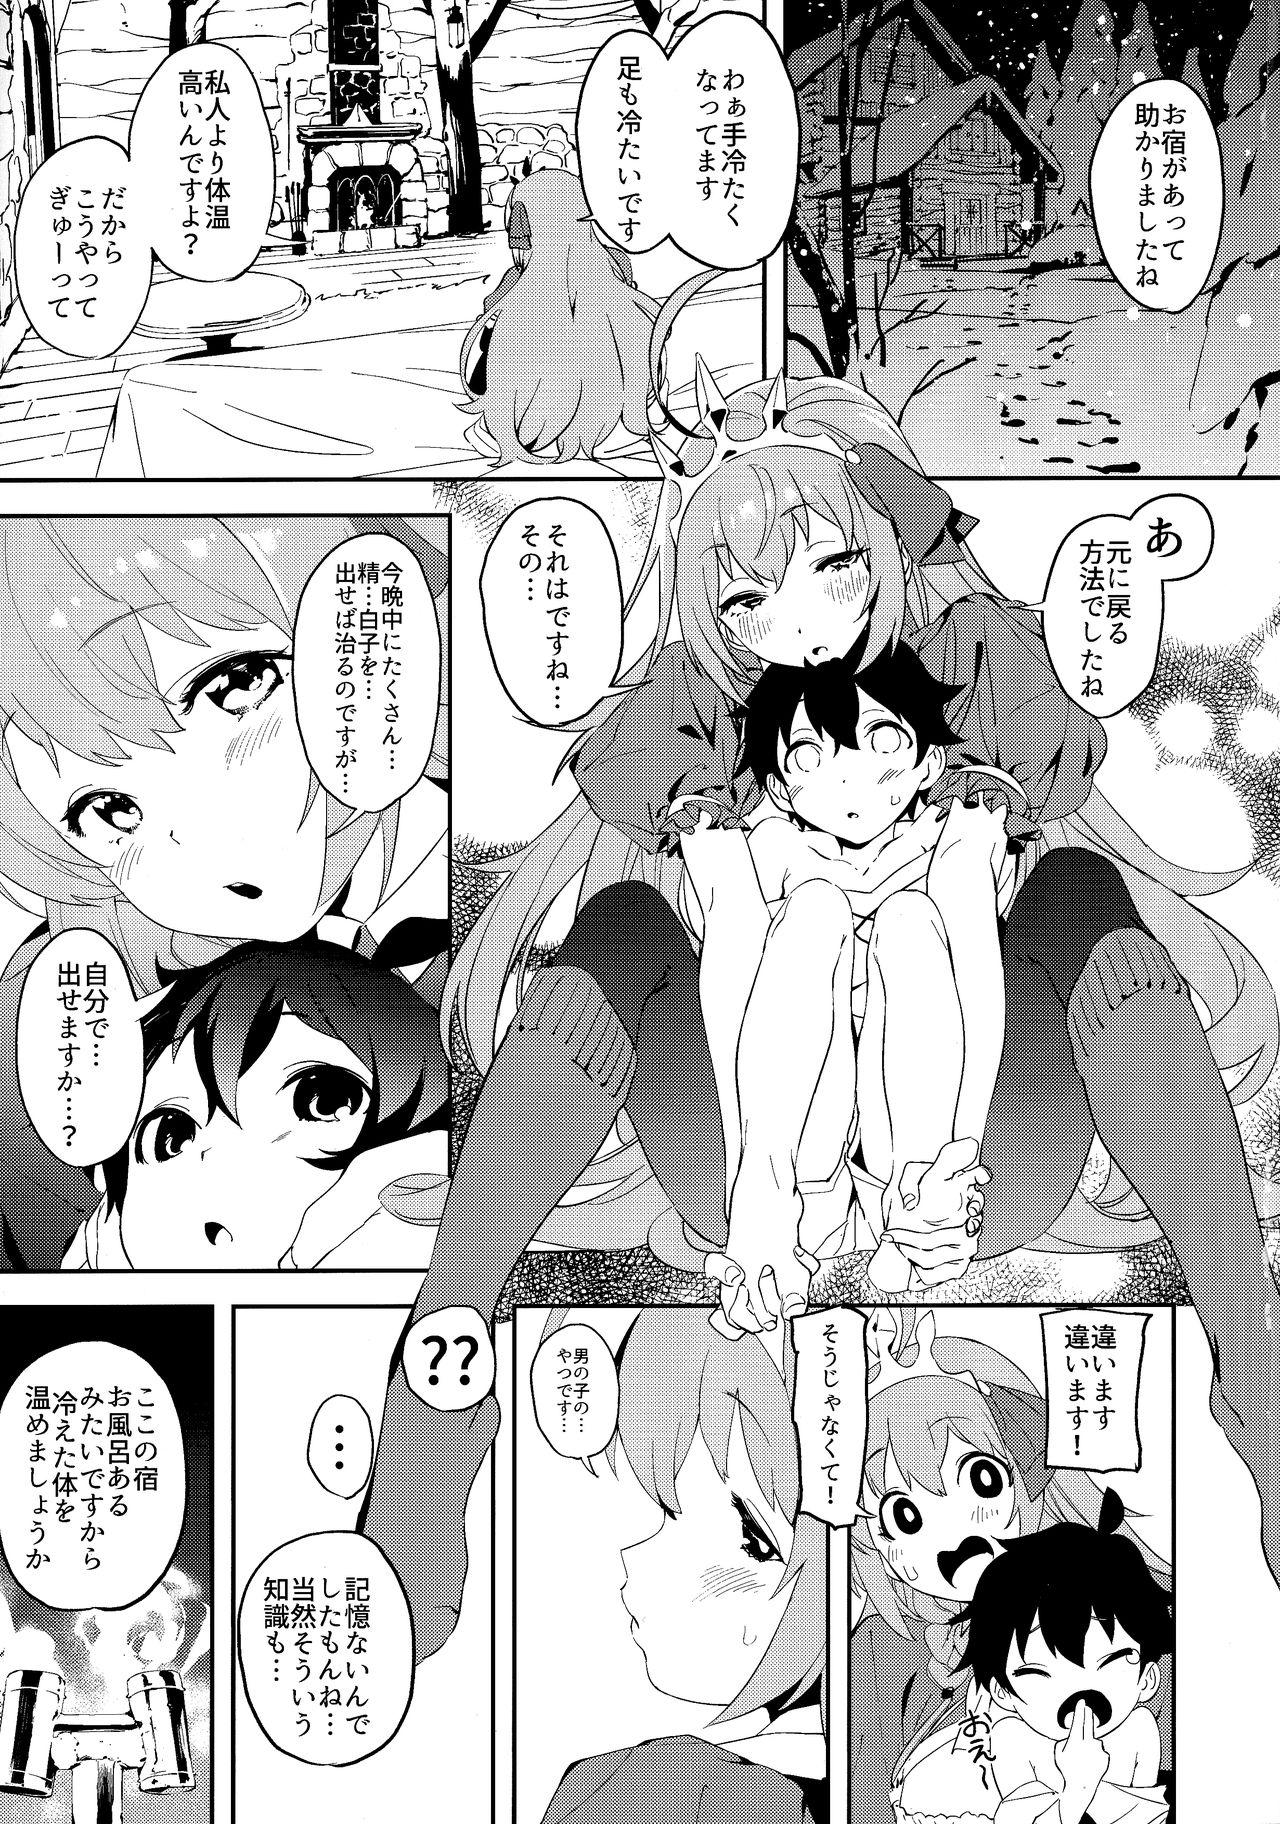 Rubia Pecorine to Shota Kishi-kun - Princess connect Bra - Page 4